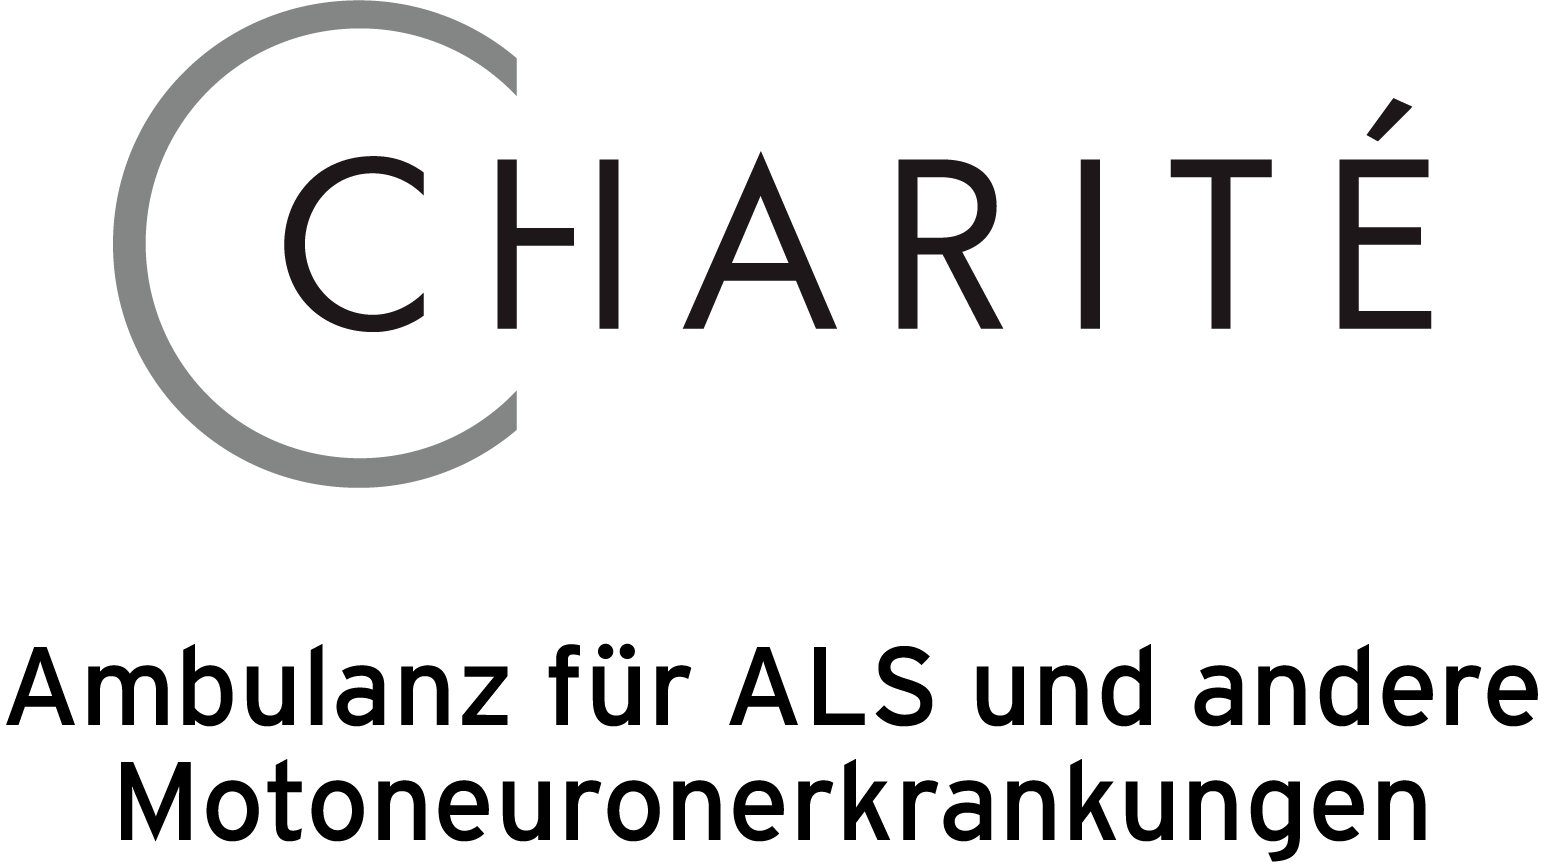 Charitè - Ambulanz für ALS und andere Motoneuronerkrankungen